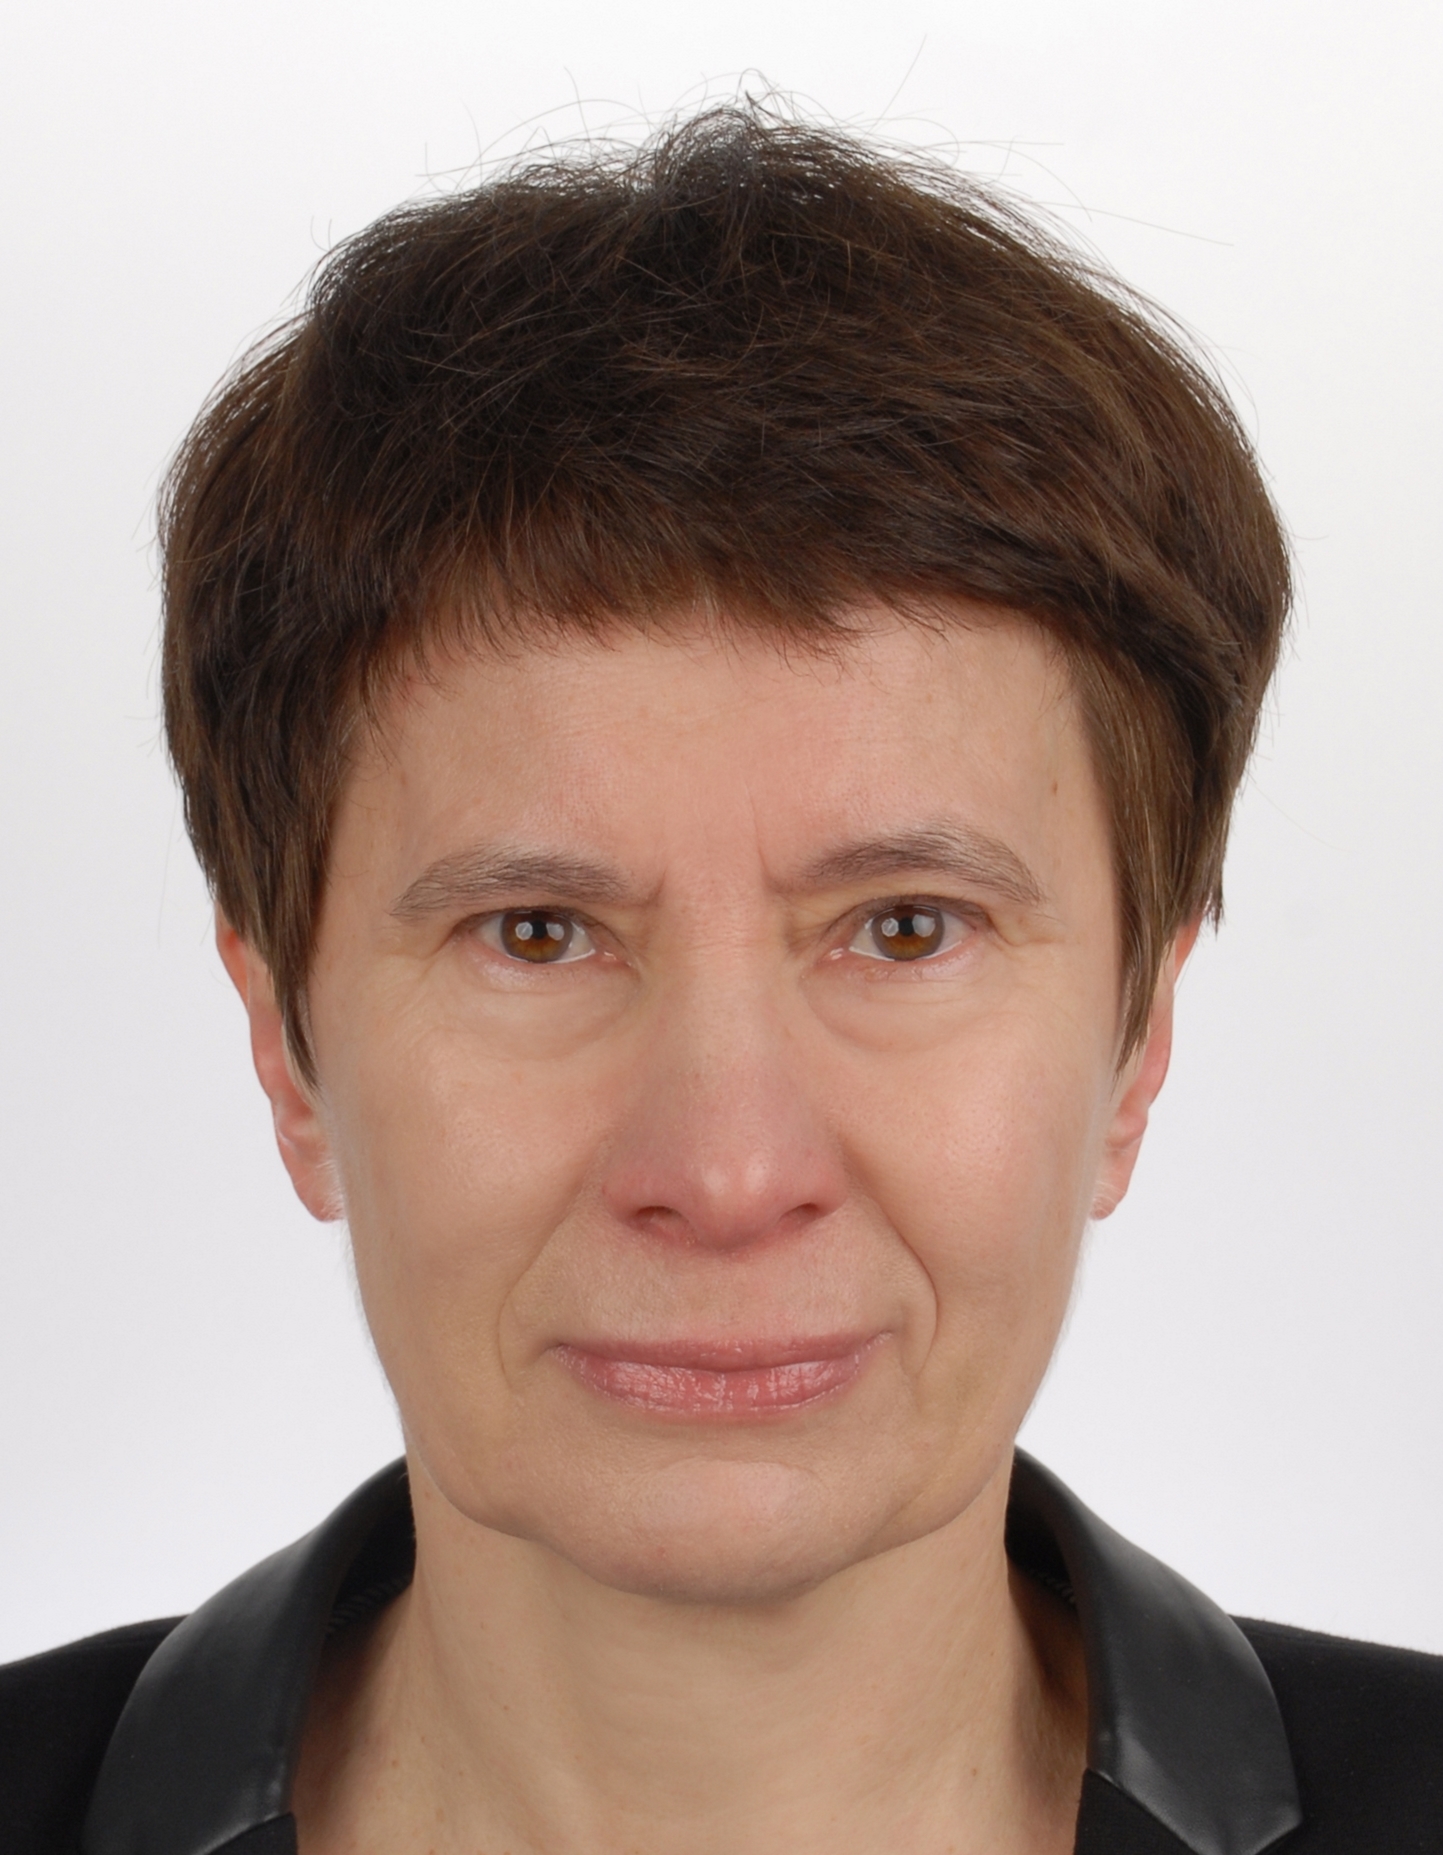 Janina Mincer-Daszkiewicz